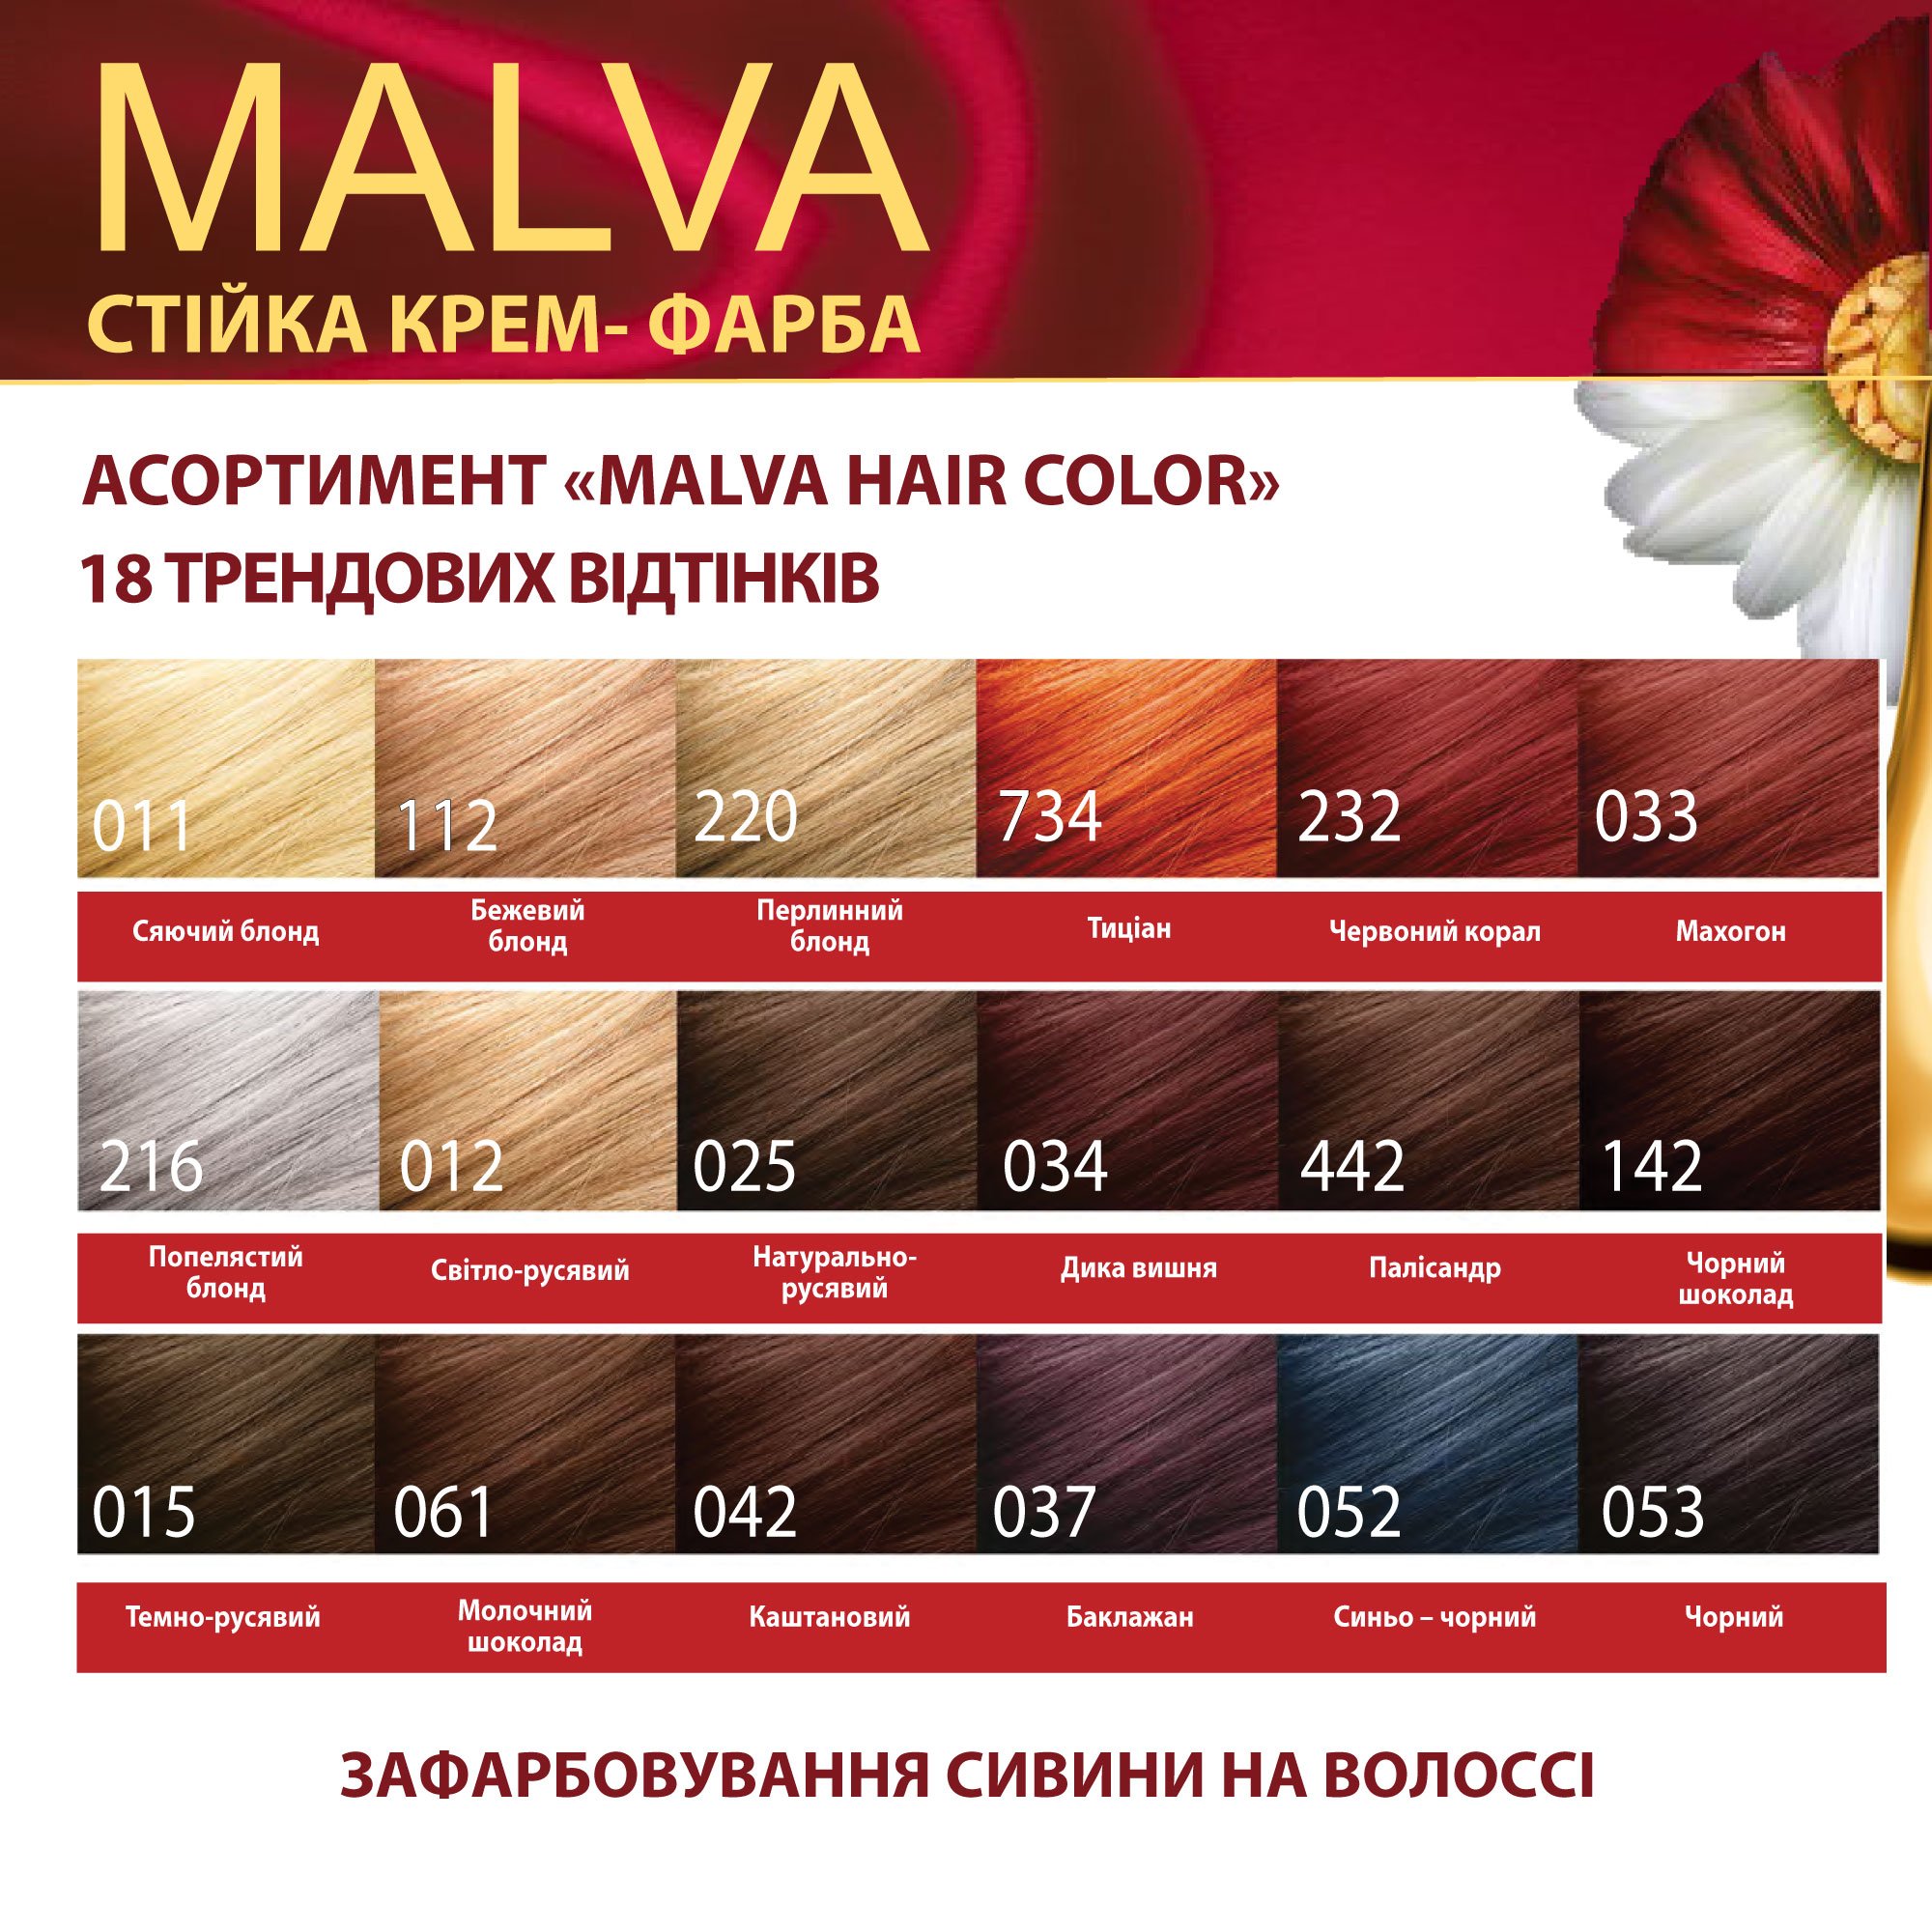 Крем-фарба для волосся Acme Color Malva, відтінок 061 (Молочний шоколад), 95 мл - фото 6